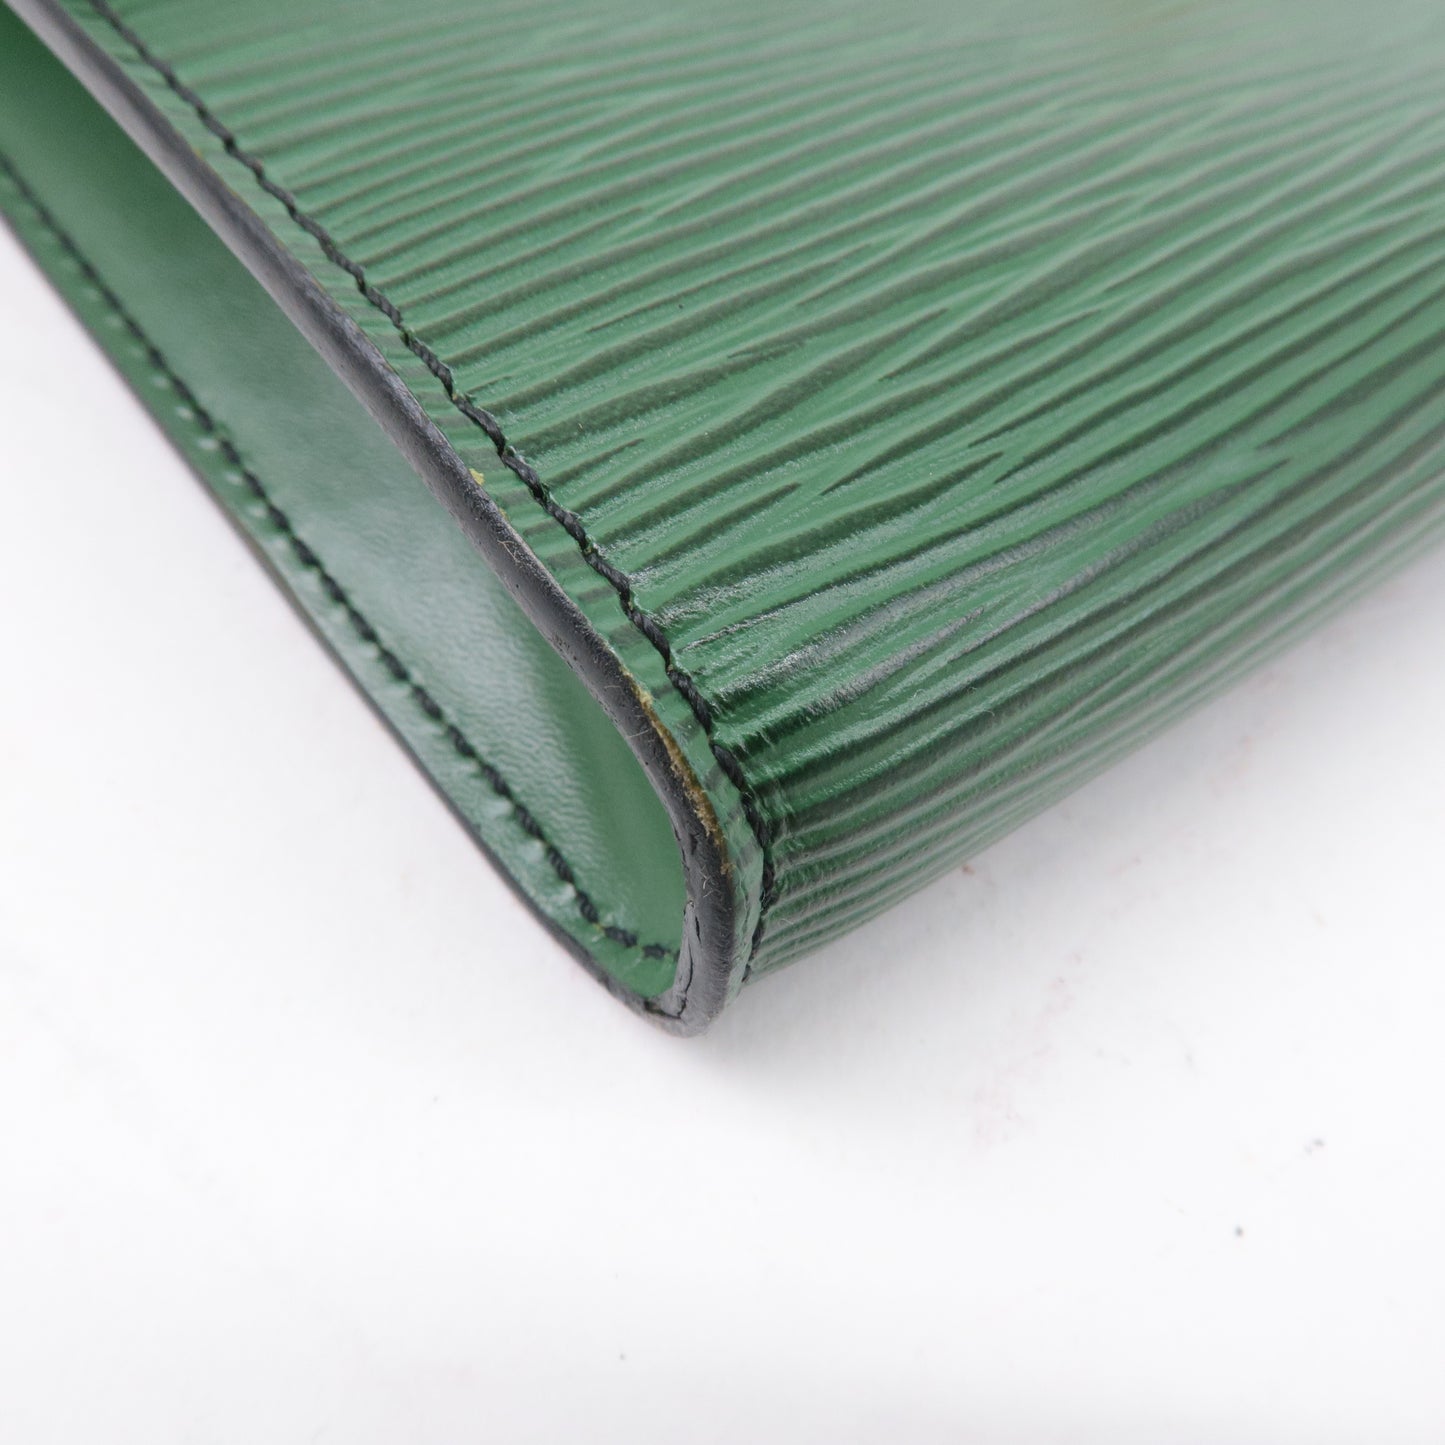 Louis Vuitton Epi Pochette Arche Shoulder Bag Borneo Green M52574